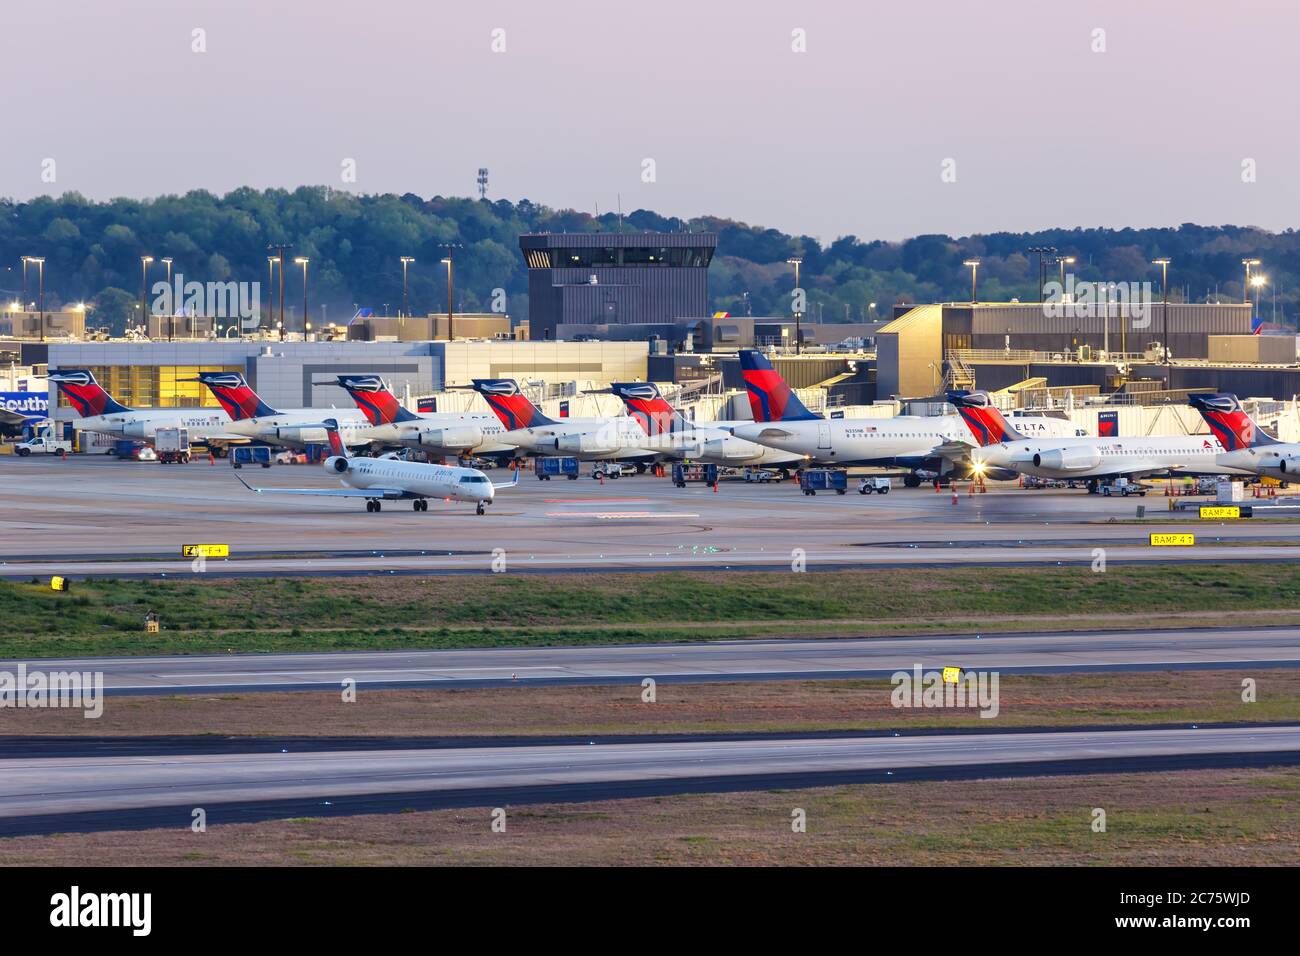 Atlanta, Georgia - April 2, 2019: Delta Air Lines airplanes at Atlanta Airport (ATL) in Georgia. Stock Photo